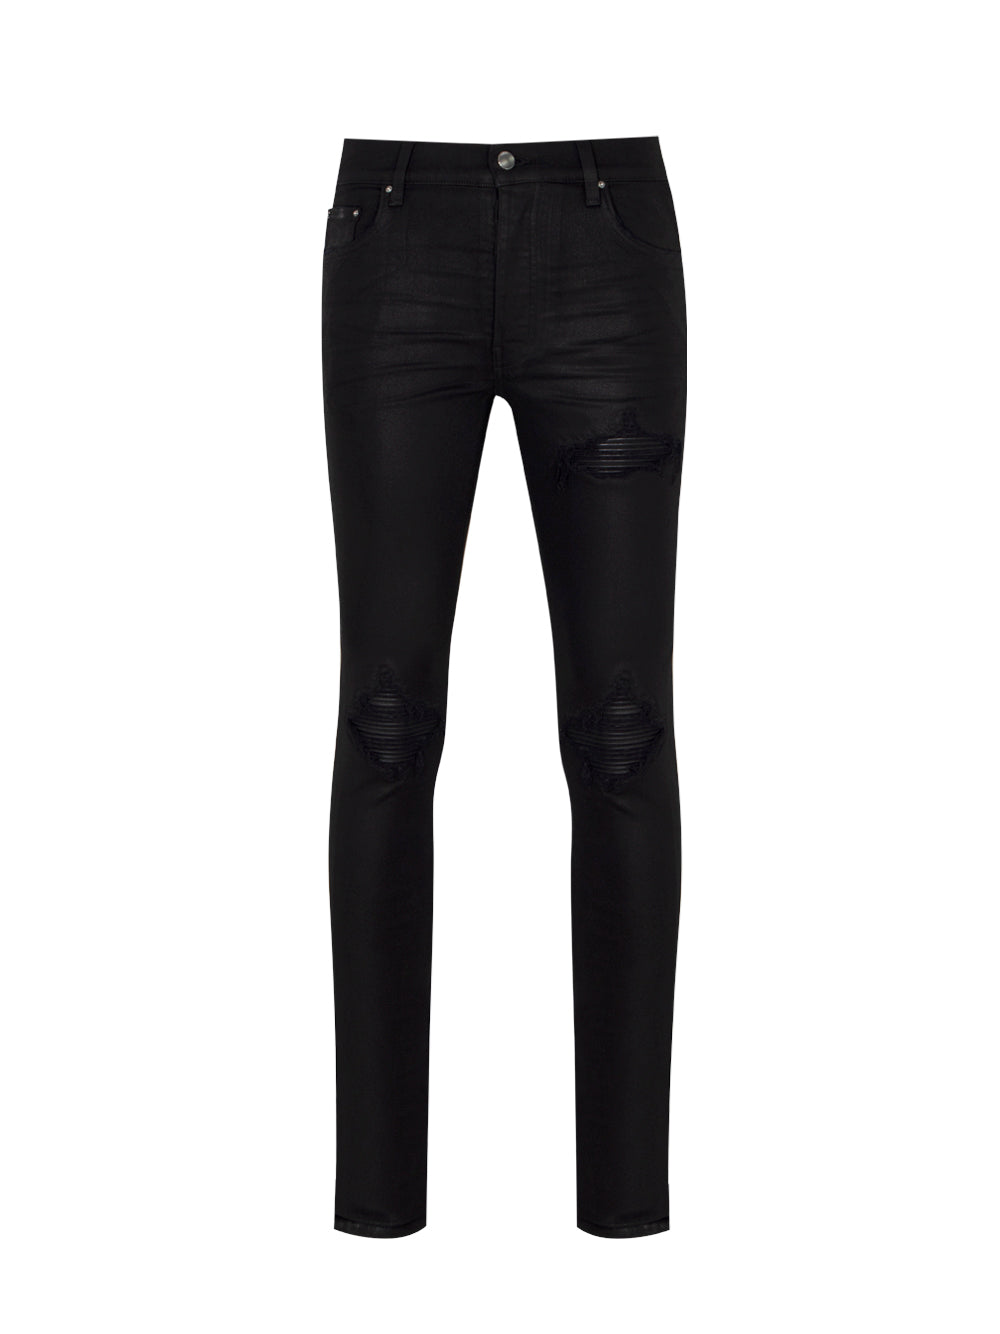 Wax MX-1 Jeans (Black)